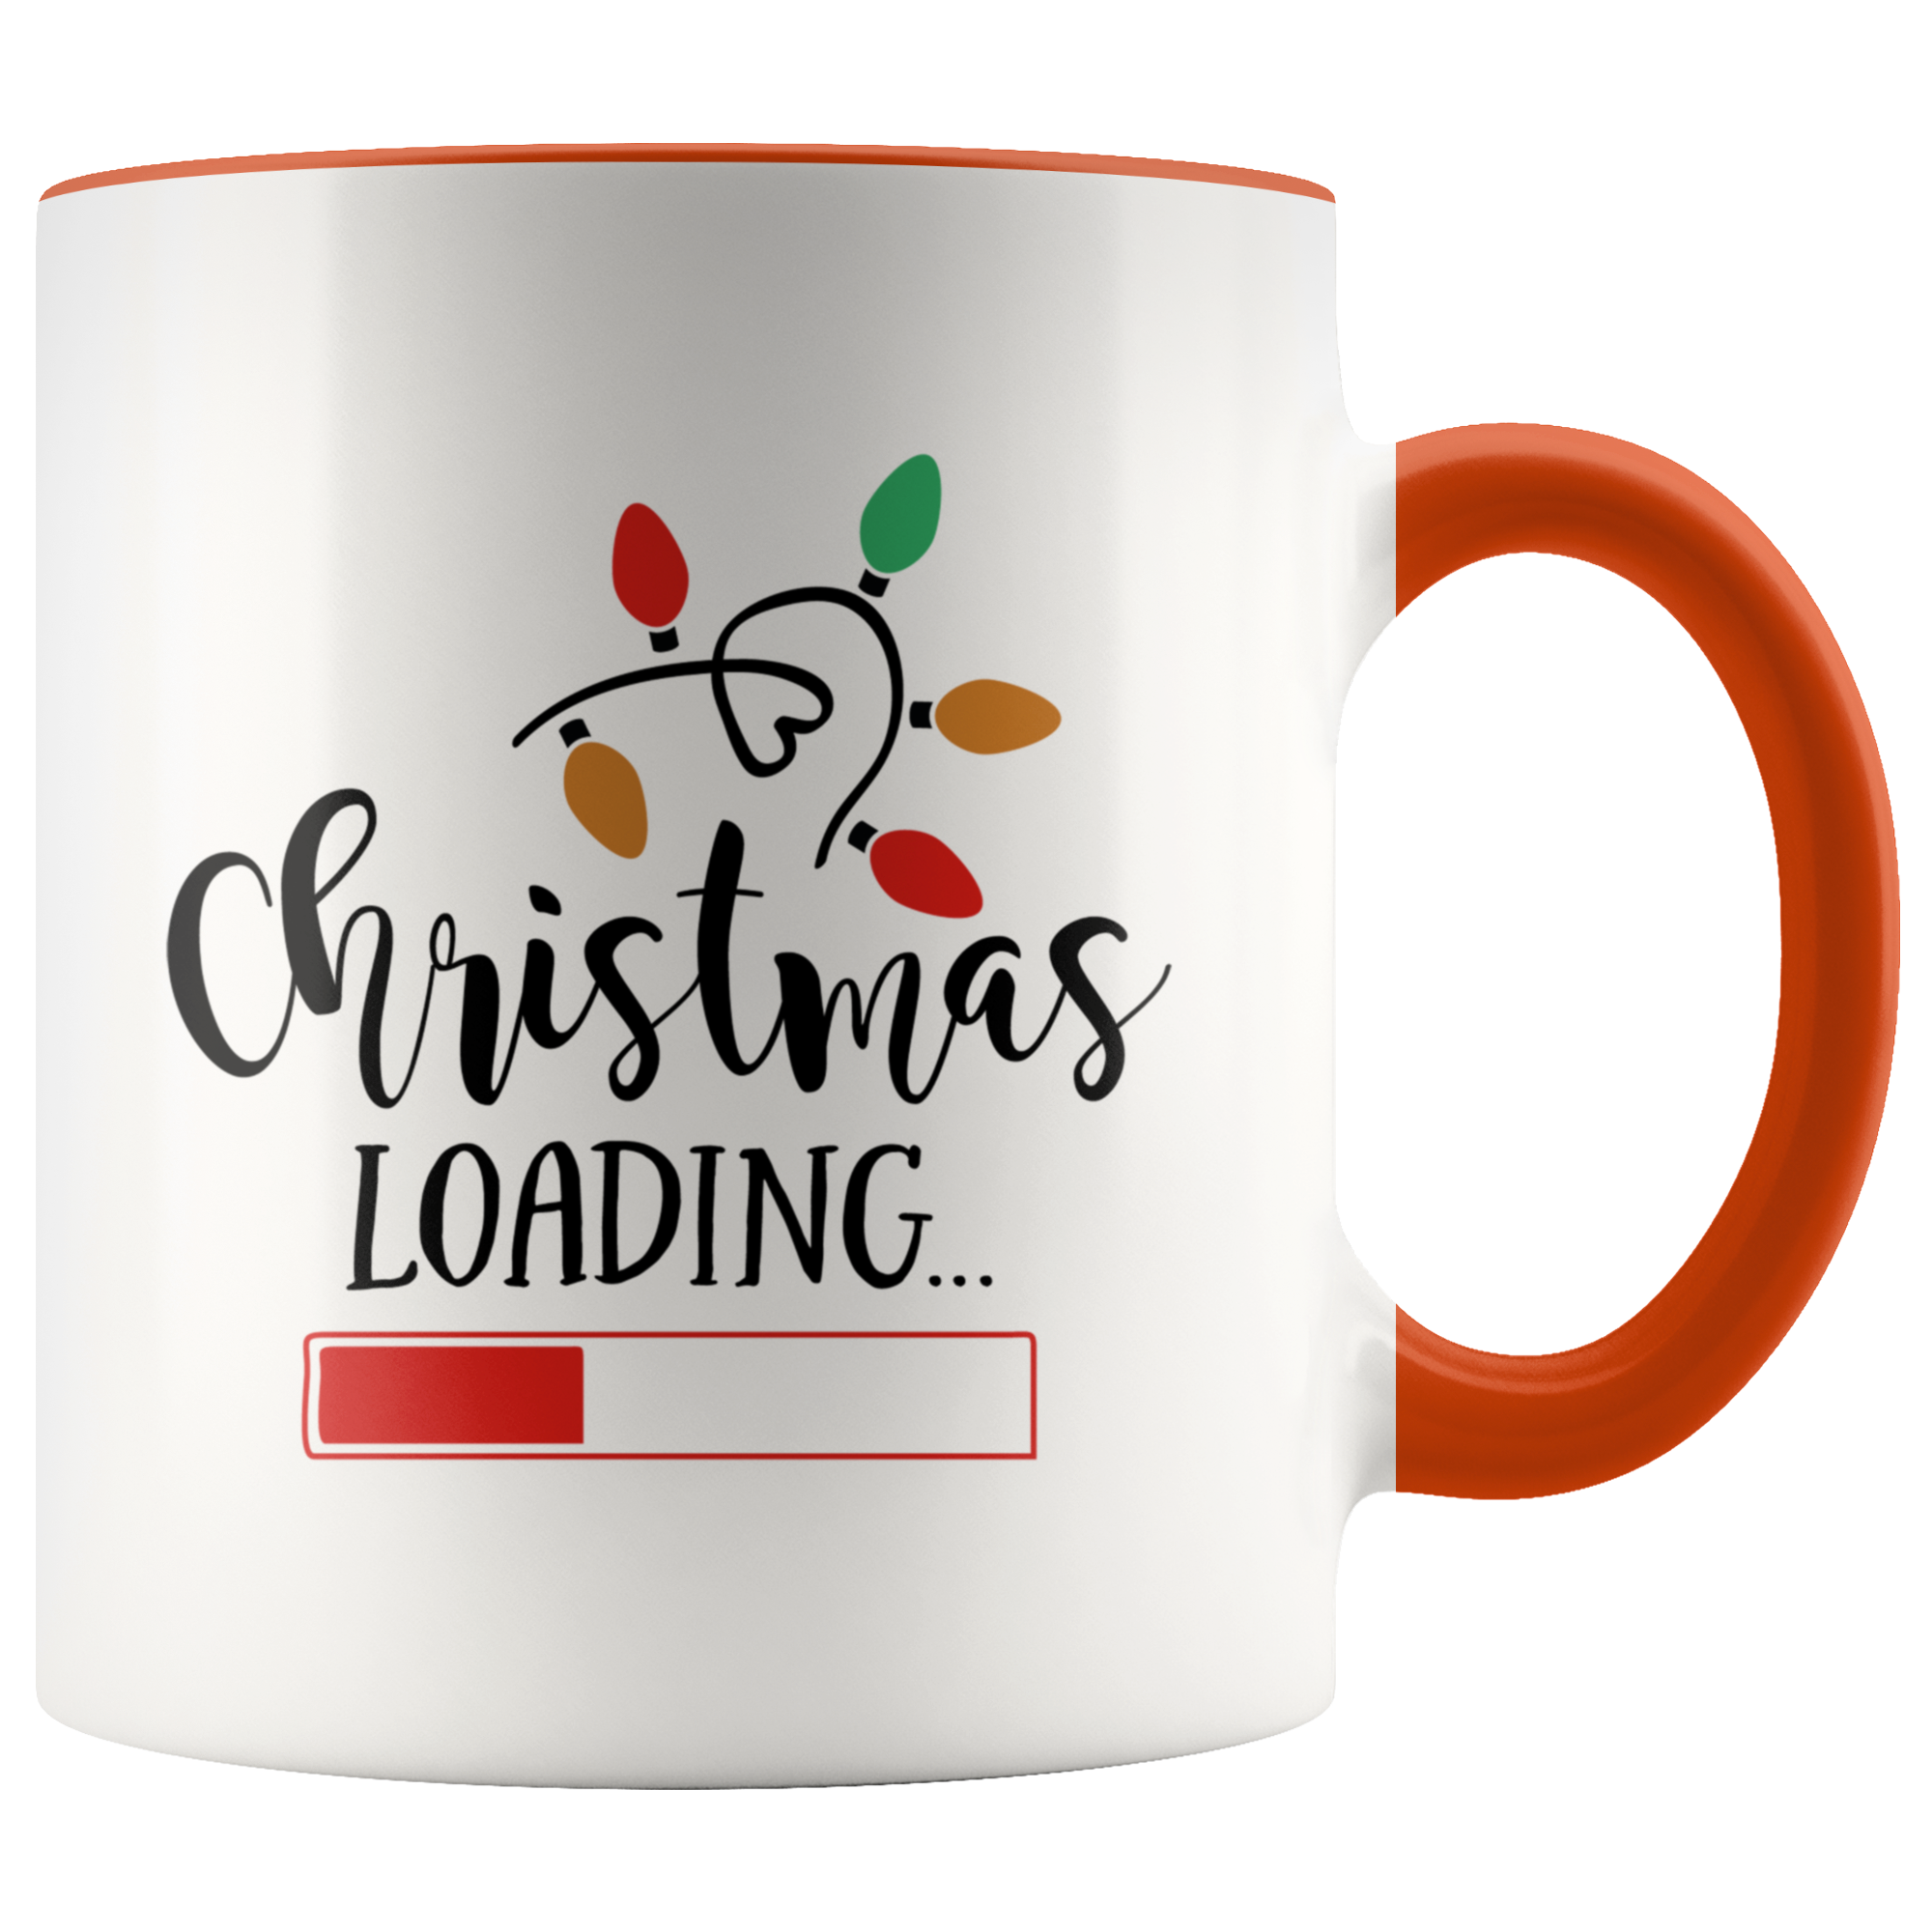 Christmas Loading Mug